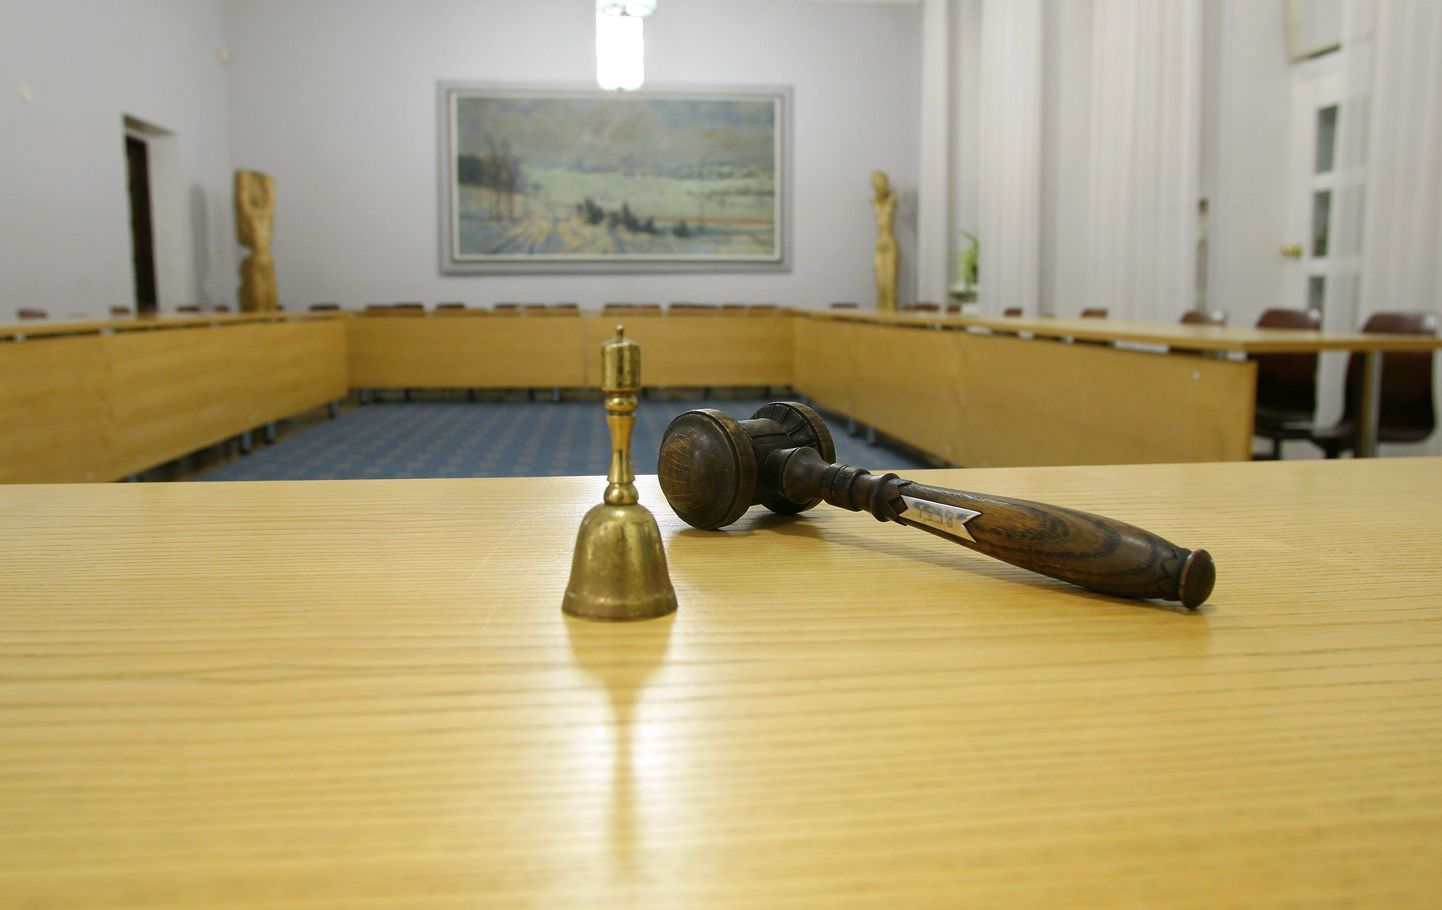 Volikogu 25. veebruari istungi päevakorda on esitatud eelnõu, mille kohaselt luuakse Viljandisse üks riigigümnaasium.